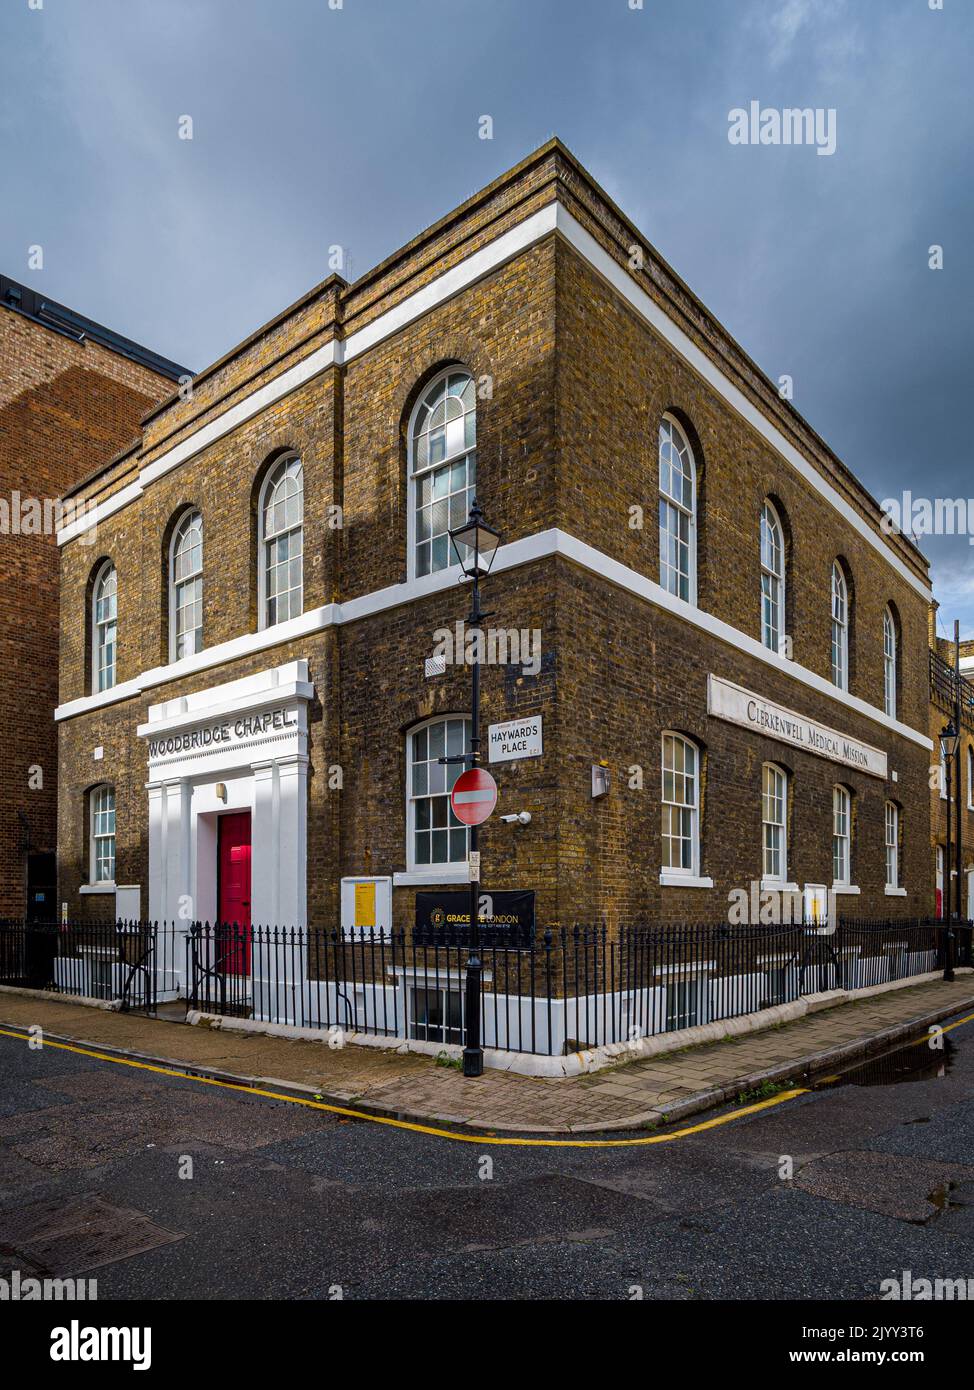 GraceLife London à Woodbridge Chapel Clerkenwell Londres. GraceLife London est une église évangélique classée Grade II Woodbridge Chapel Clerkenwell, Banque D'Images